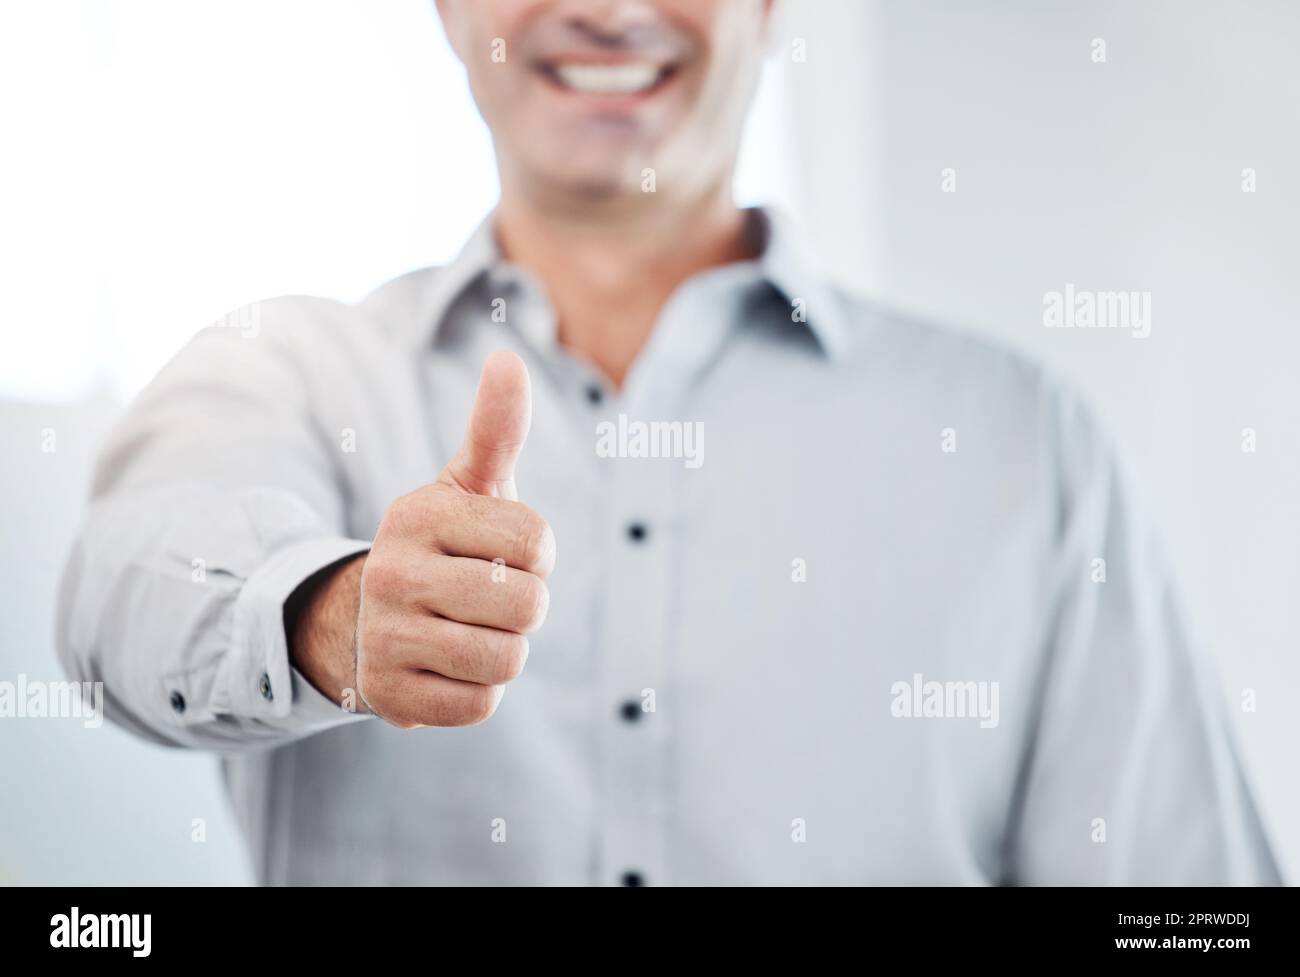 Un uomo d'affari si alza il pollice, vota o ama le emoji della mano per promuovere, avere successo o fidarsi. Un ringraziamento professionale, sì o un segno di supporto o un'icona per un accordo, una revisione sui social media o un lavoro soddisfacente Foto Stock